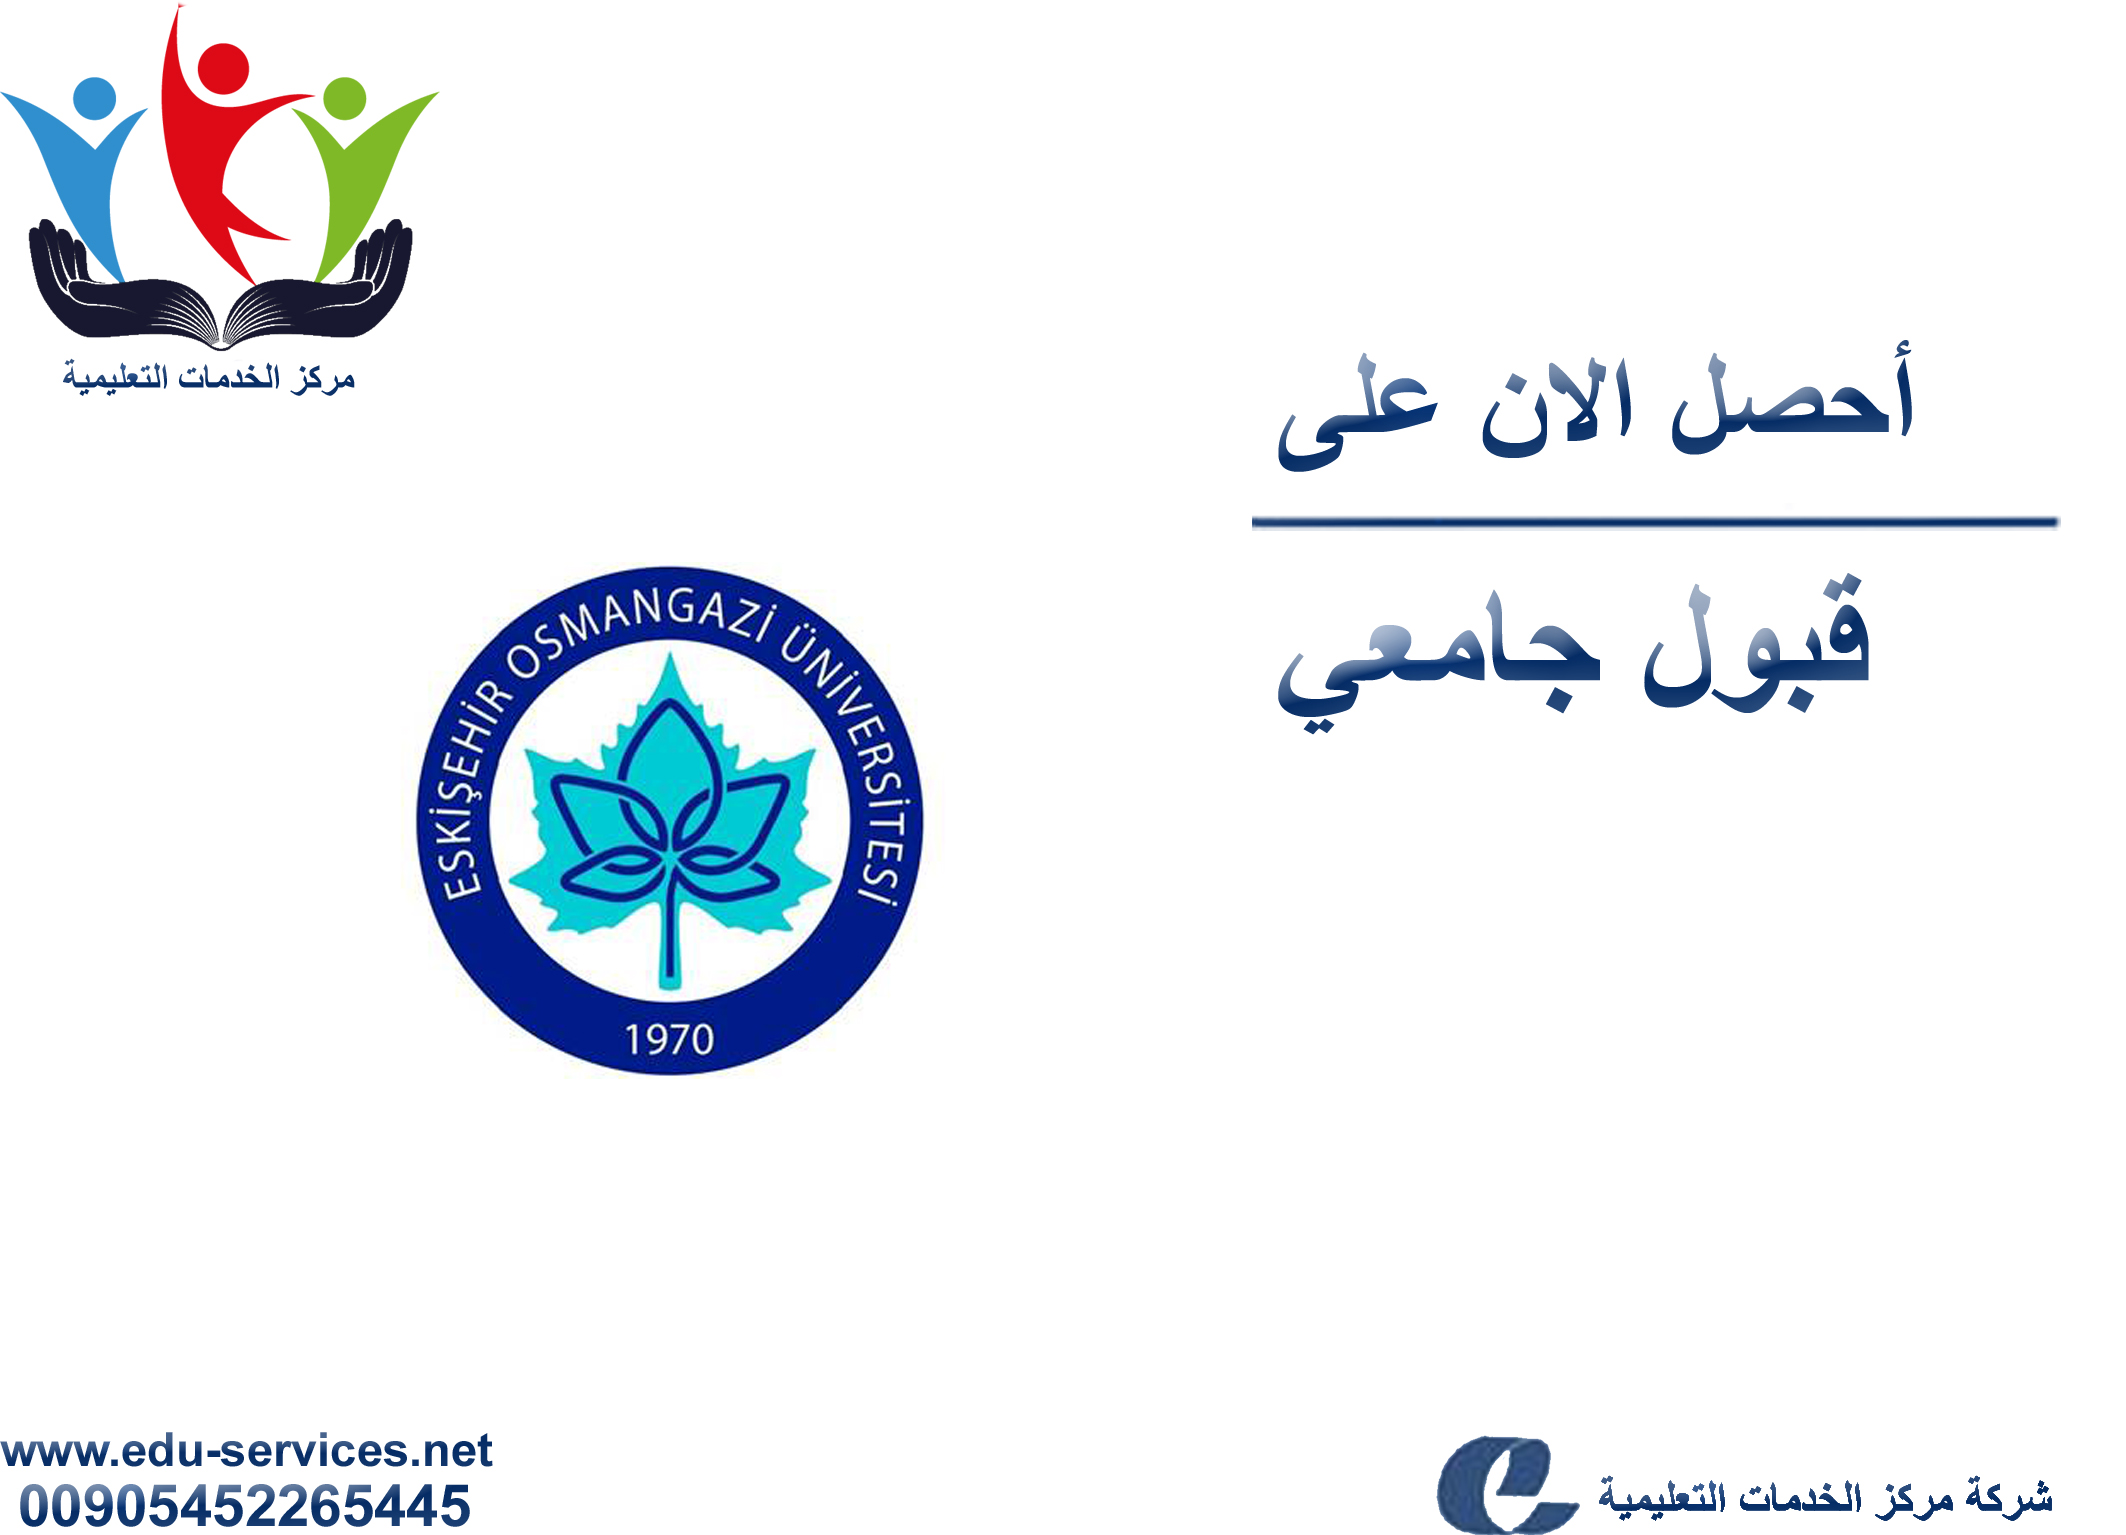 افتتاح التسجيل في جامعة اسكي شهير عثمان غازي للعام 2017-2018